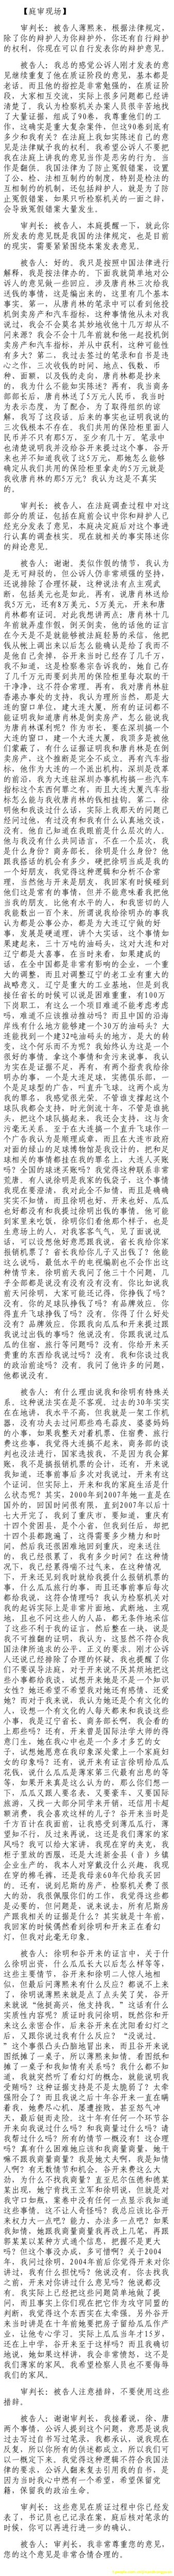 济南市中级法院官方微博公布的8月26日庭审现场记录（2）